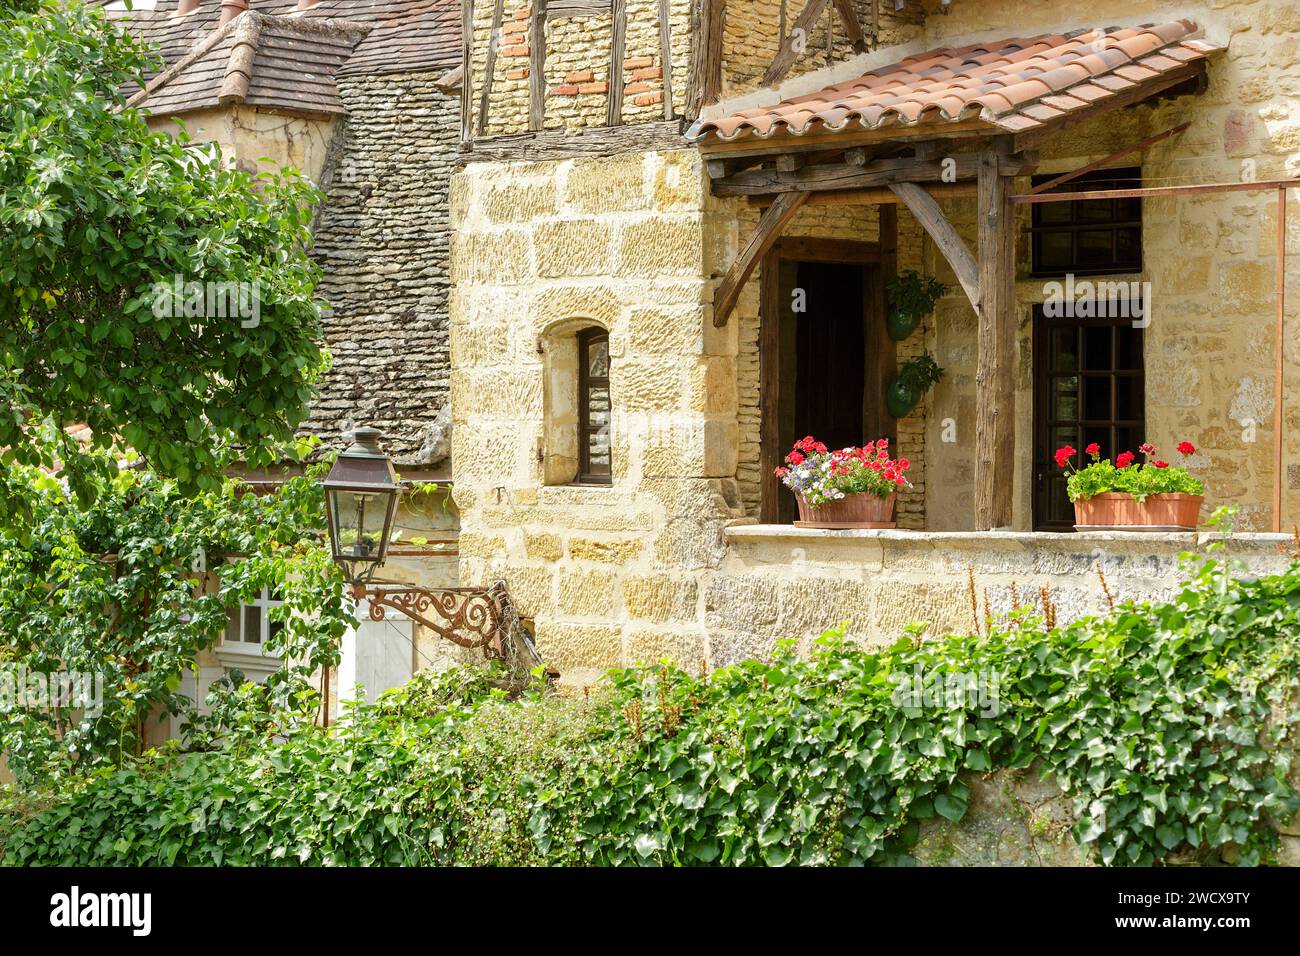 Francia, Dordogne, Perigord Noir, Valle della Dordogna, Sarlat la Caneda, casa tradizionale costruita tra il XVI e il XVII secolo, situata nel centro storico dichiarato Patrimonio dell'Umanità dall'UNESCORue Montaigne Foto Stock